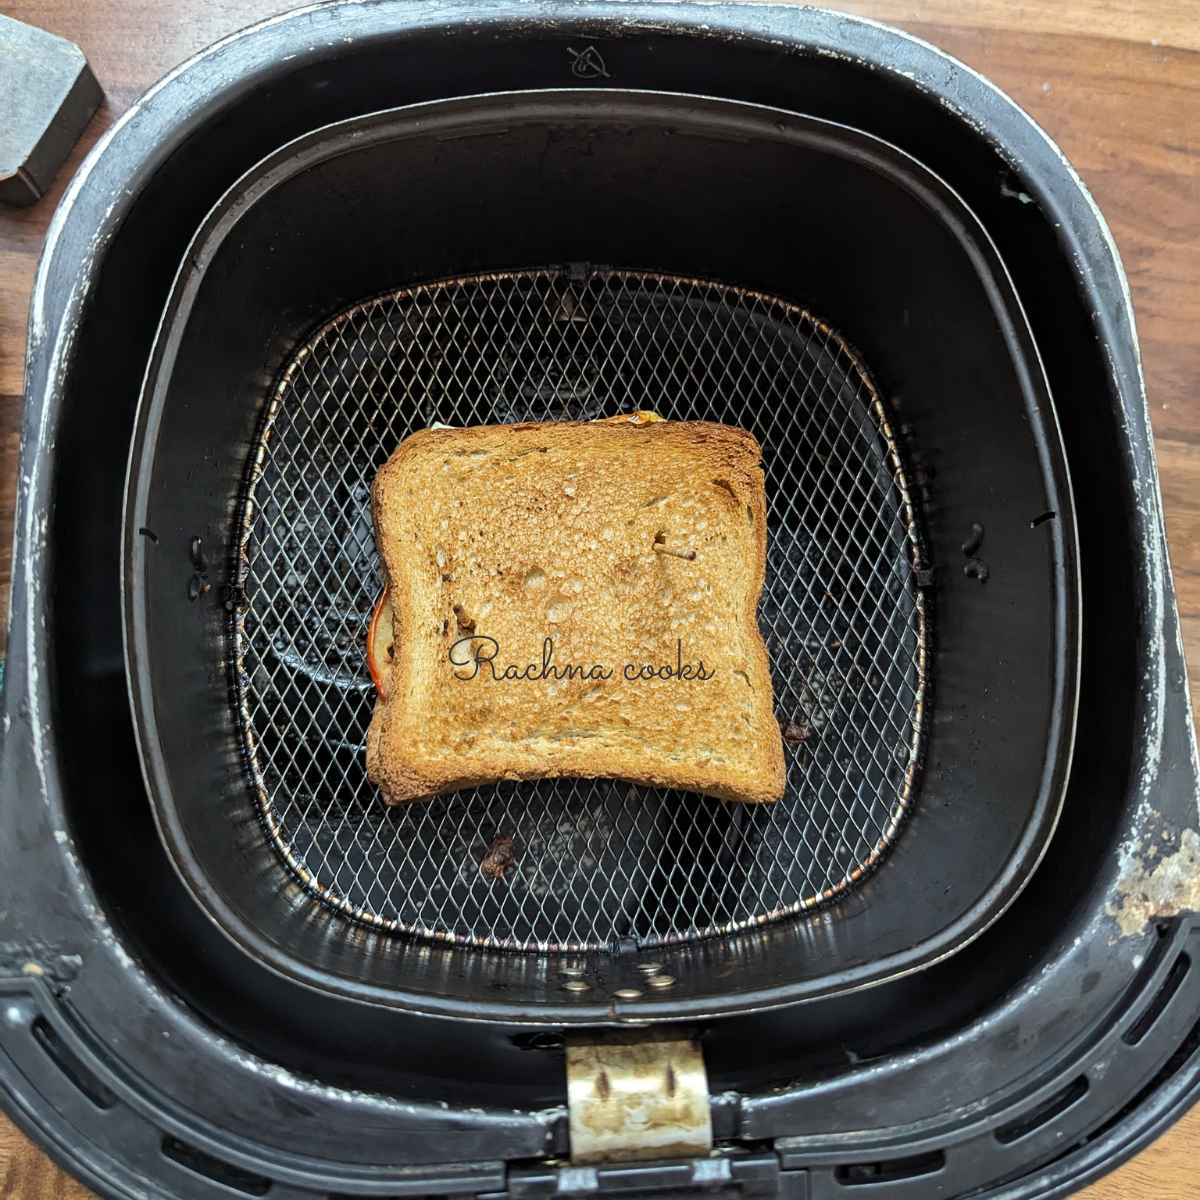 Air fryer sandwich in basket.